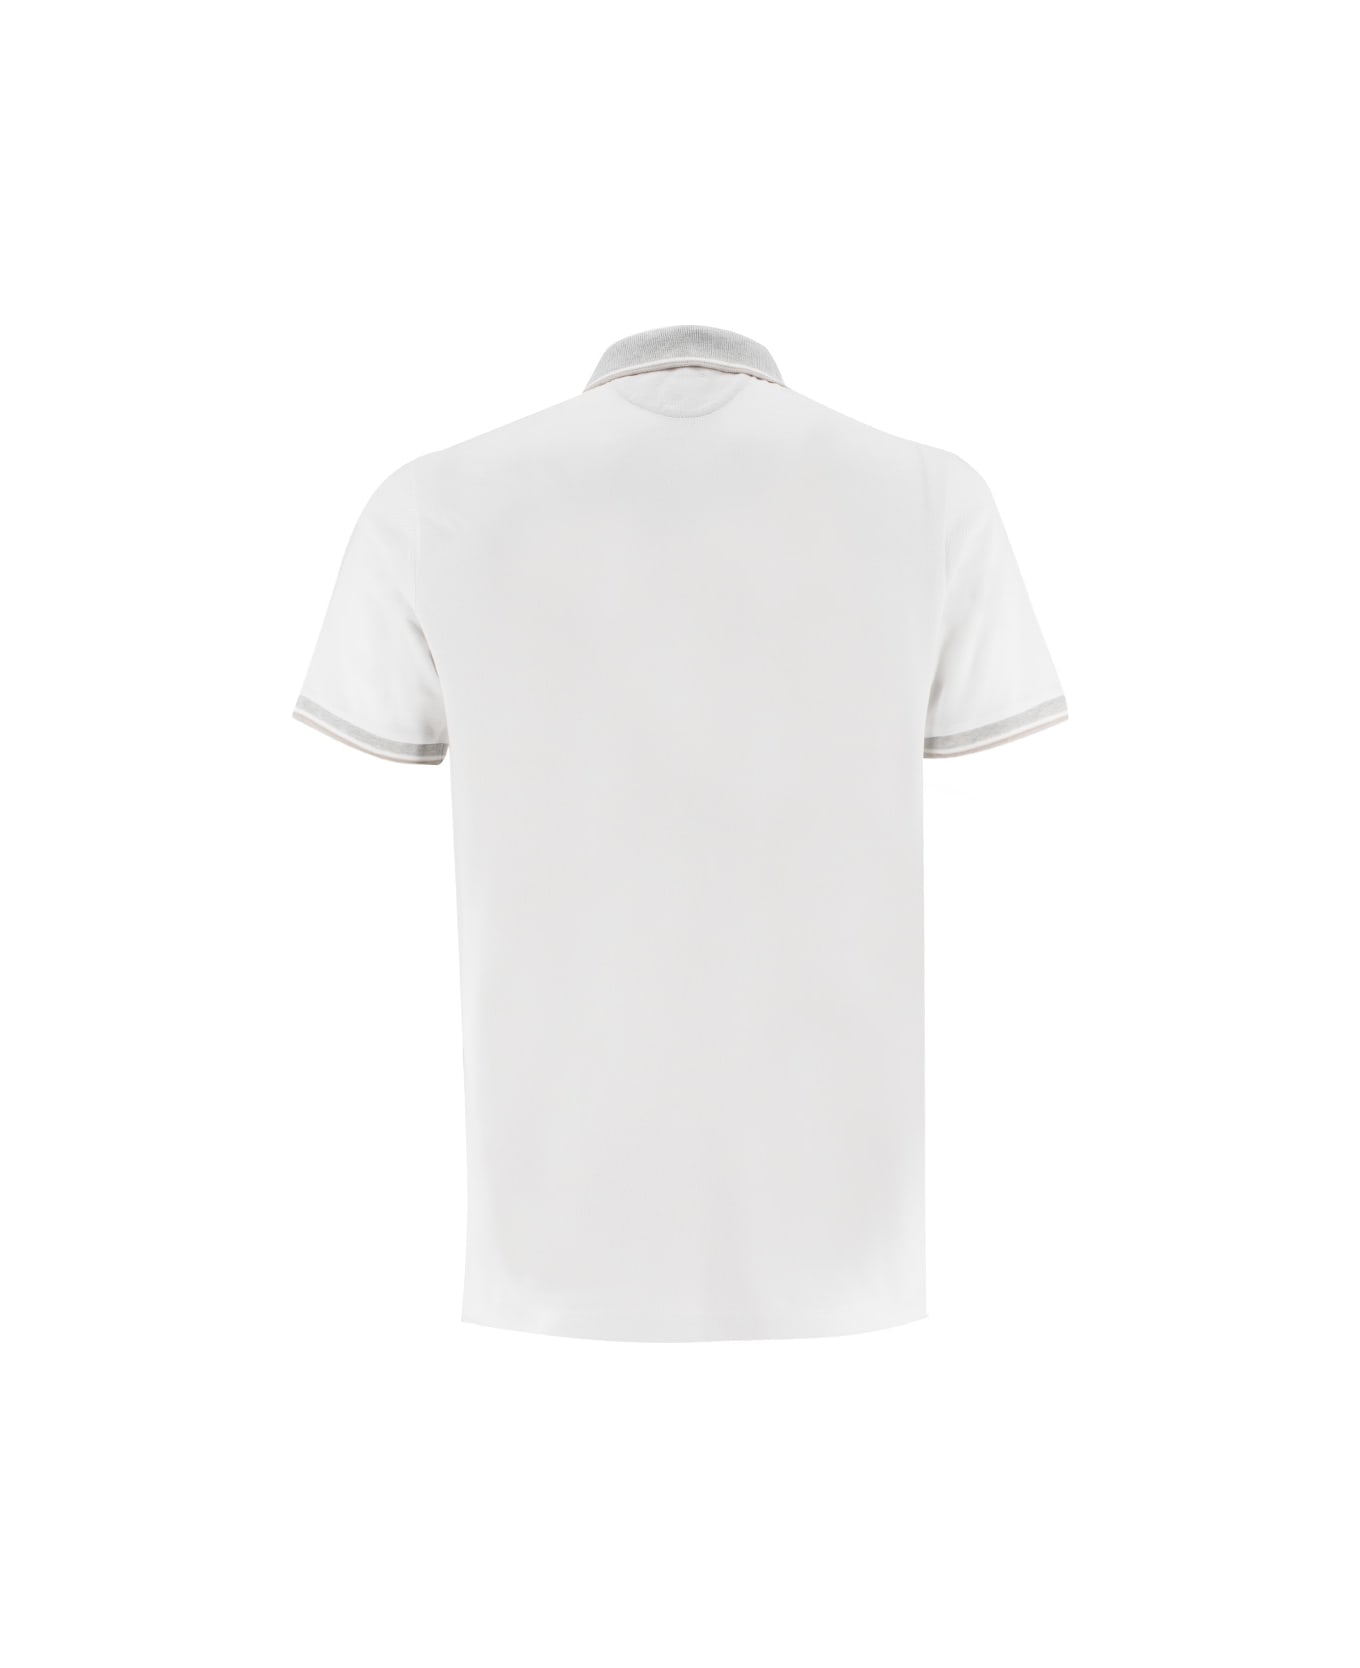 Eleventy Polo - WHITE ポロシャツ